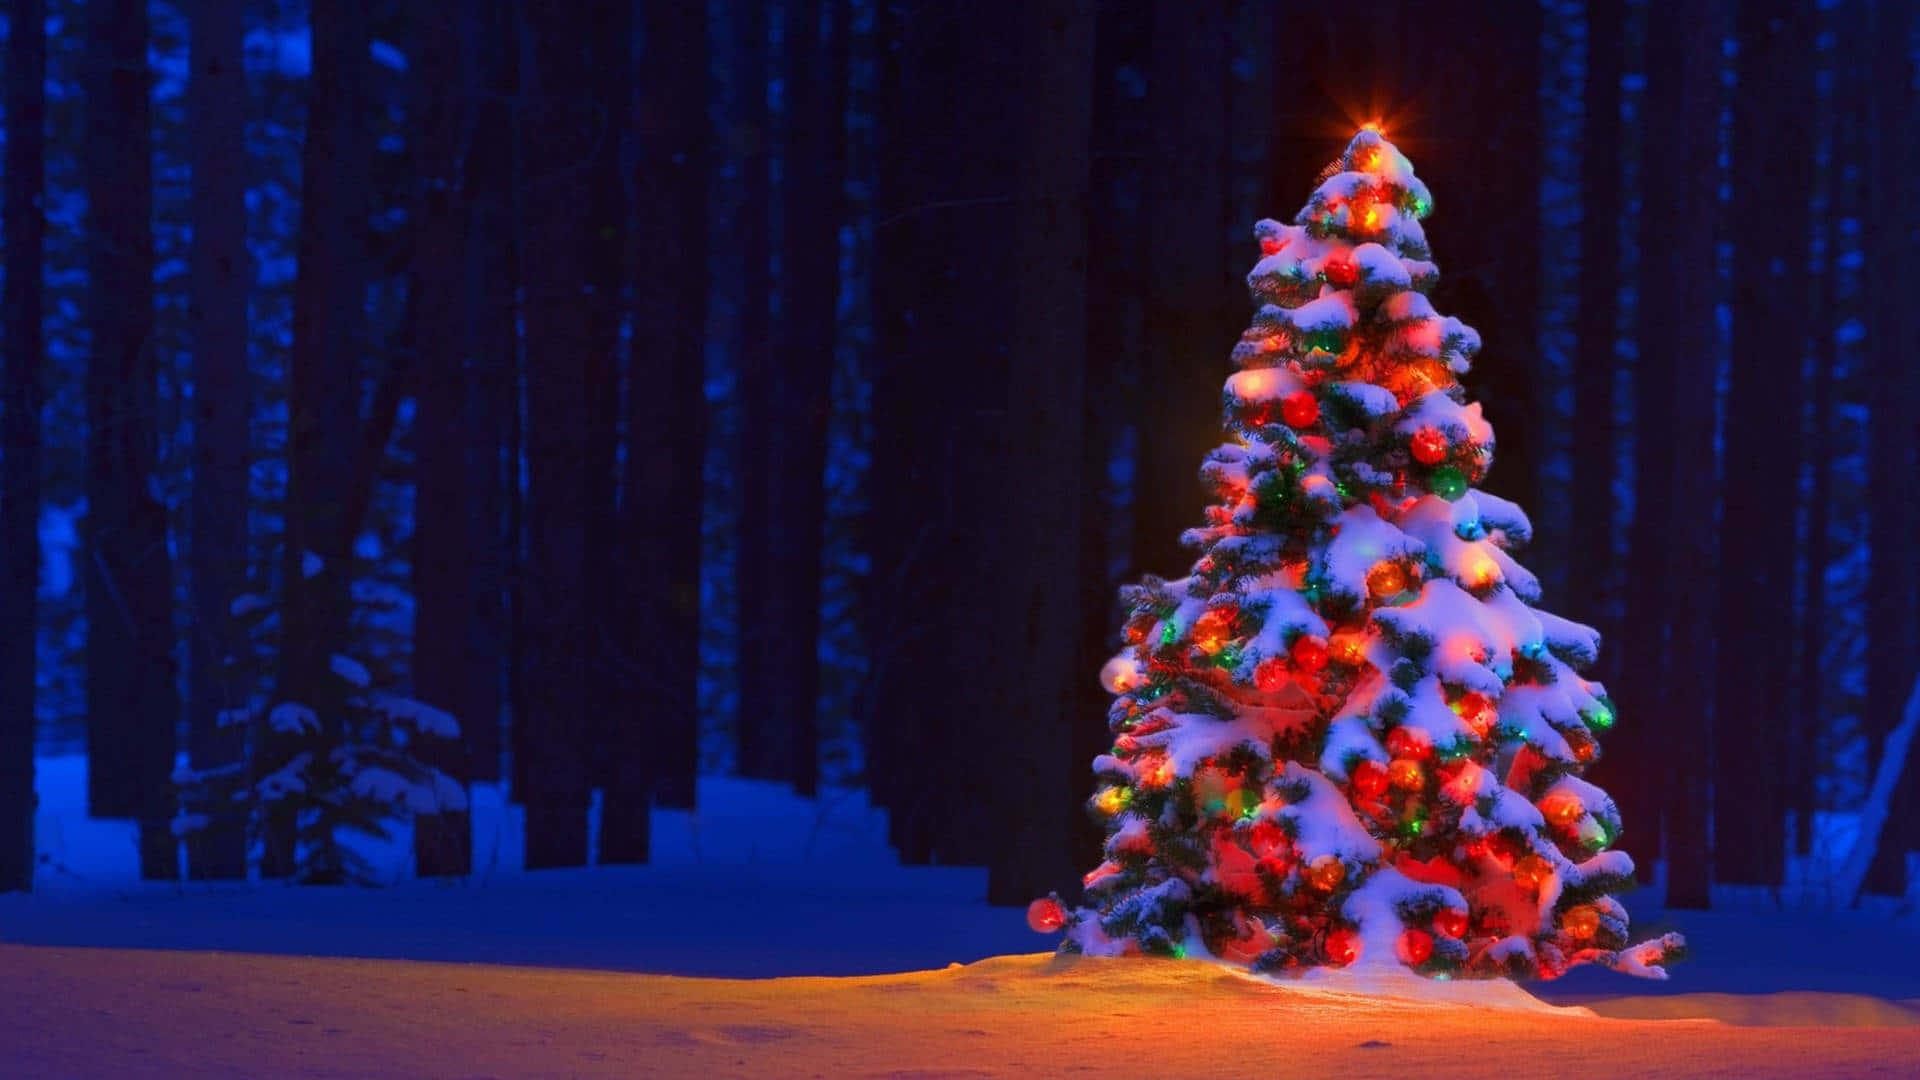 Umaárvore De Natal Na Neve Com Luzes Acesas. Papel de Parede